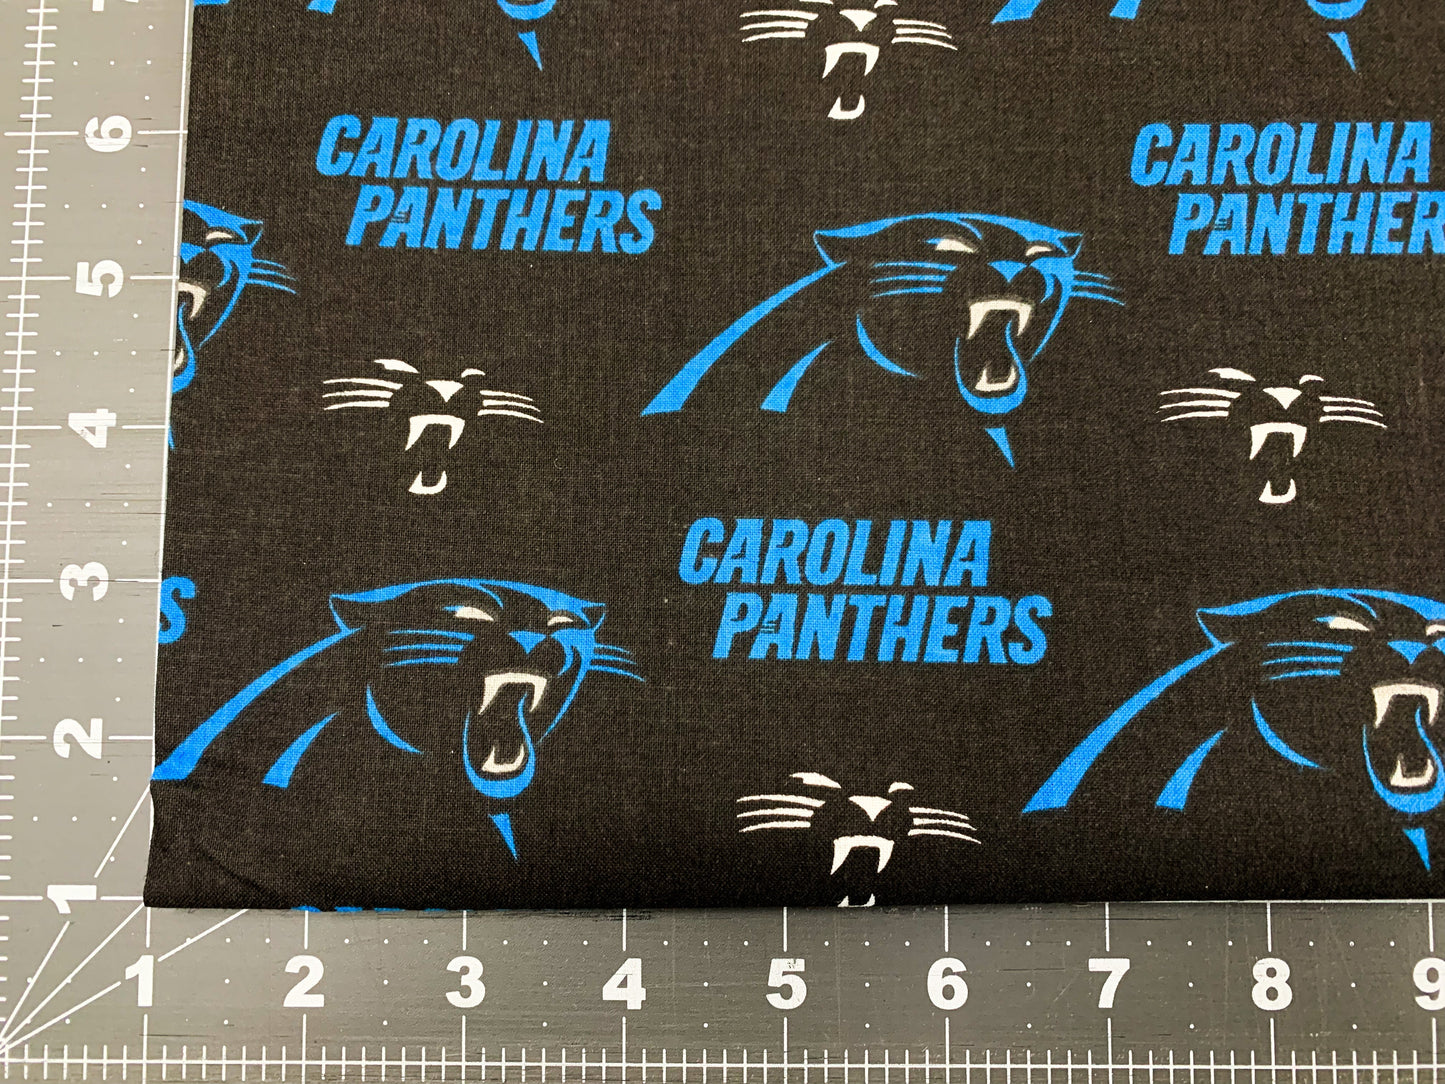 Carolina Panthers fabric 6401D NFL fabric Panther cotton fabric